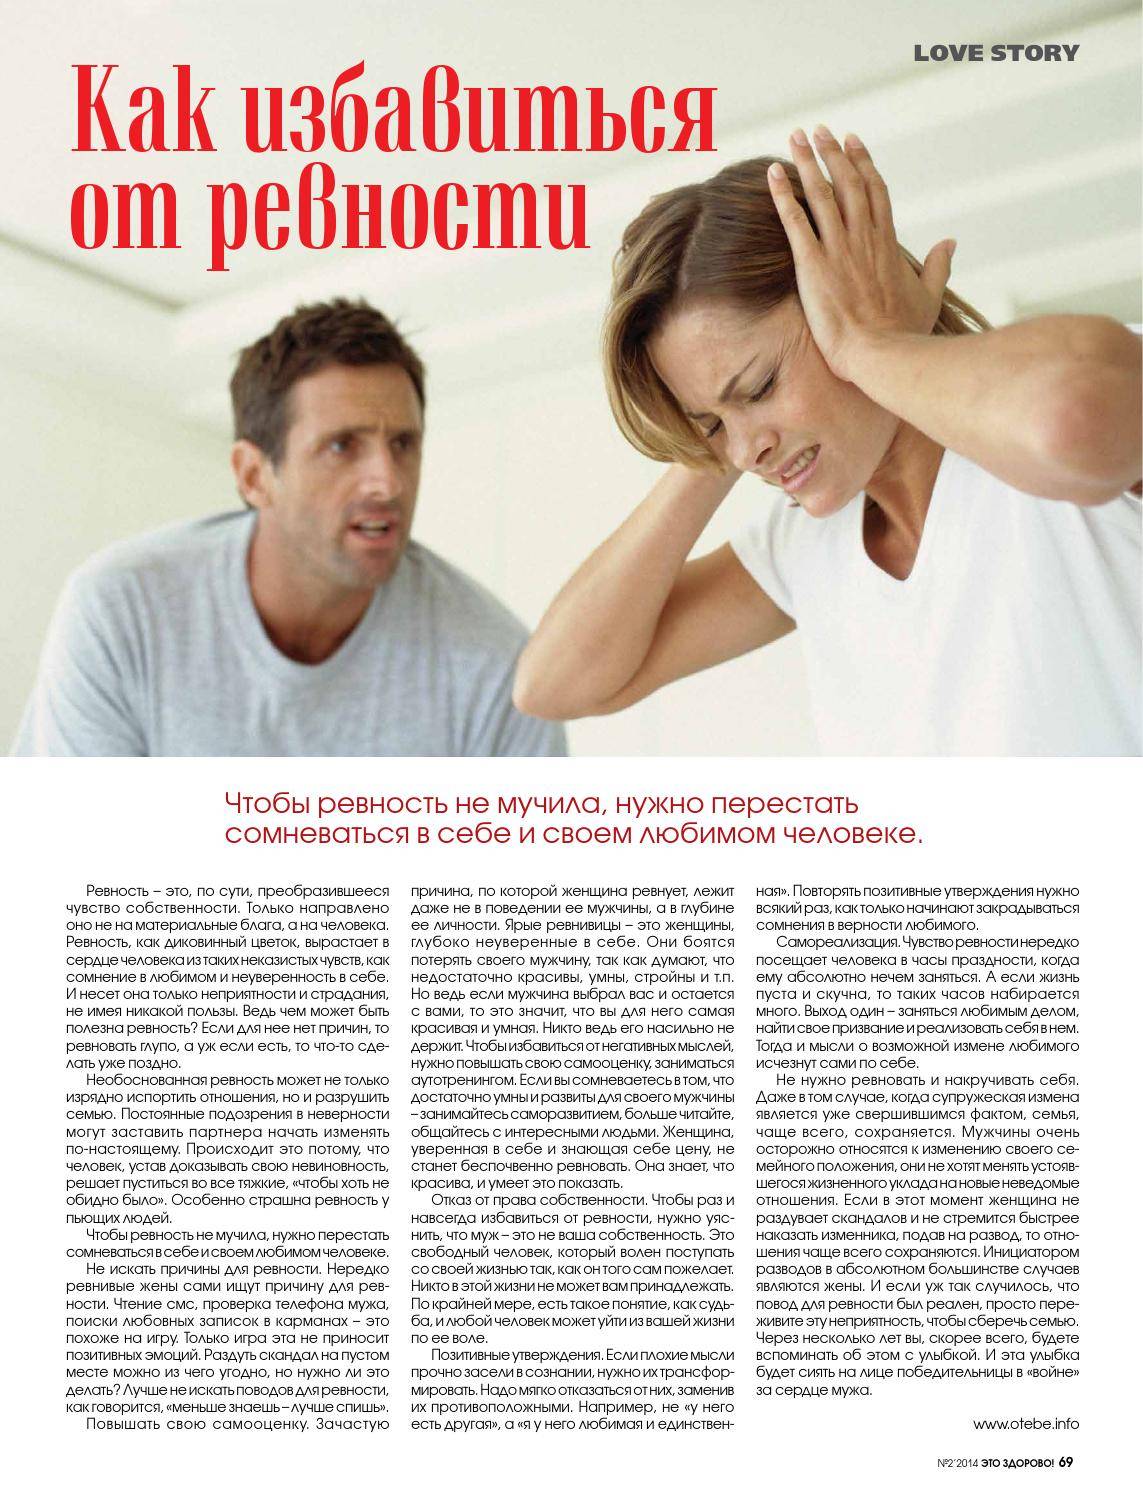 Как перестать постоянно ревновать своего мужа — полезные советы | психология на psychology-s.ru